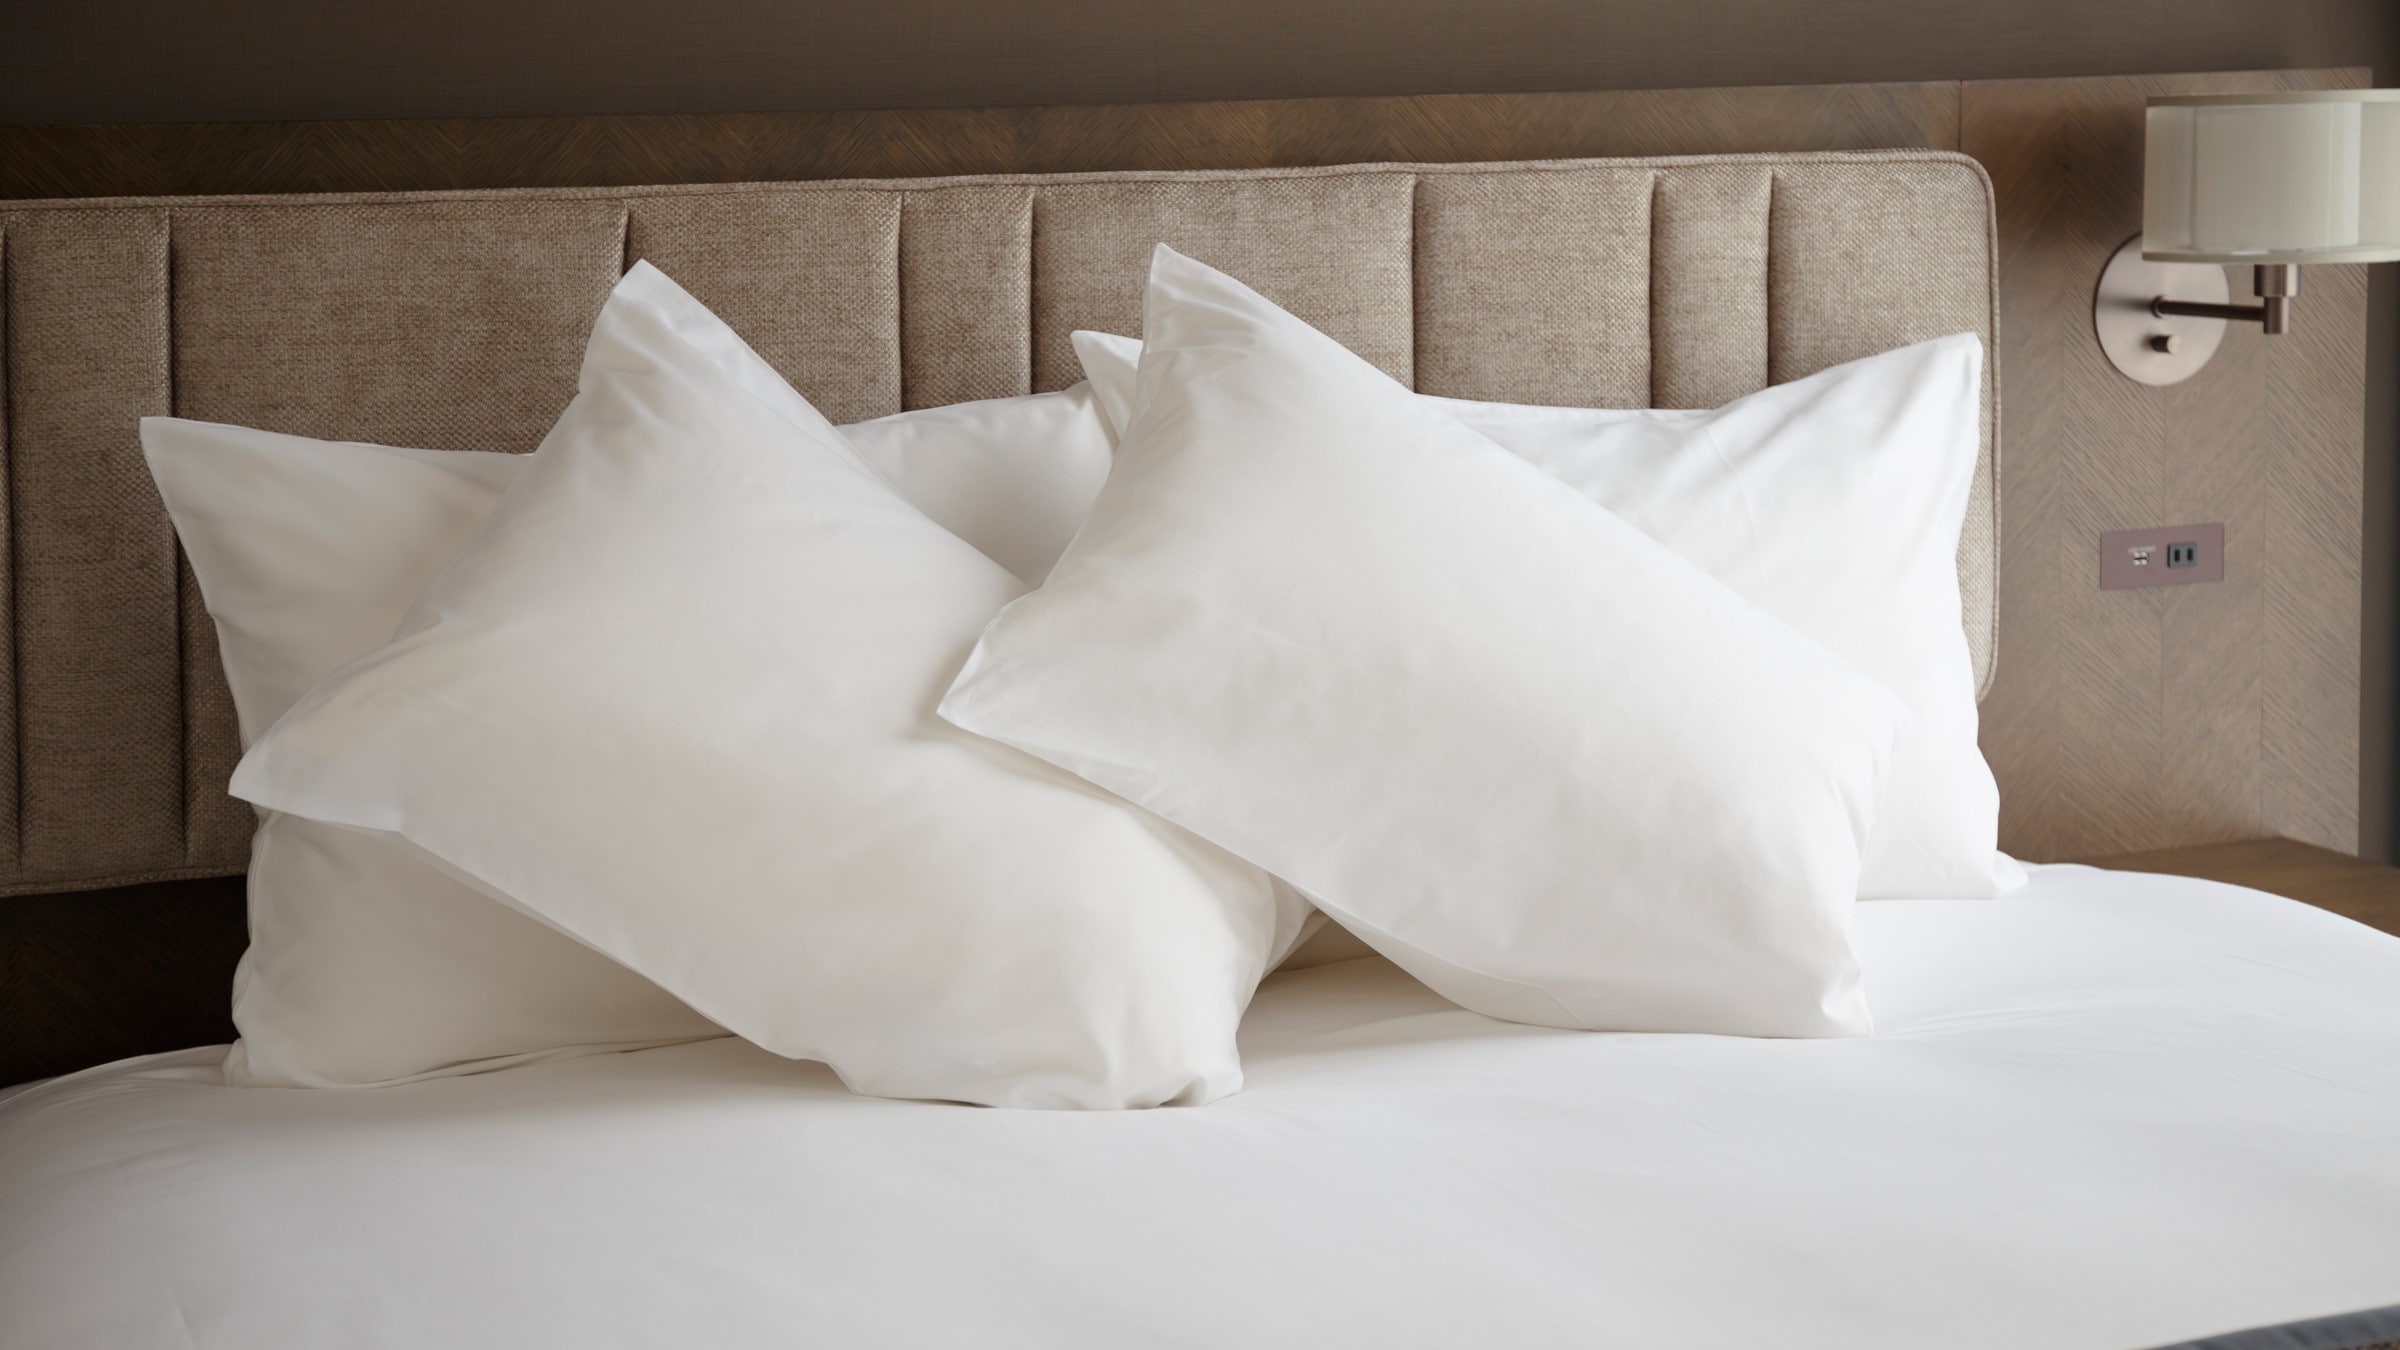 & lt; Room amenities image & gt; Pillow